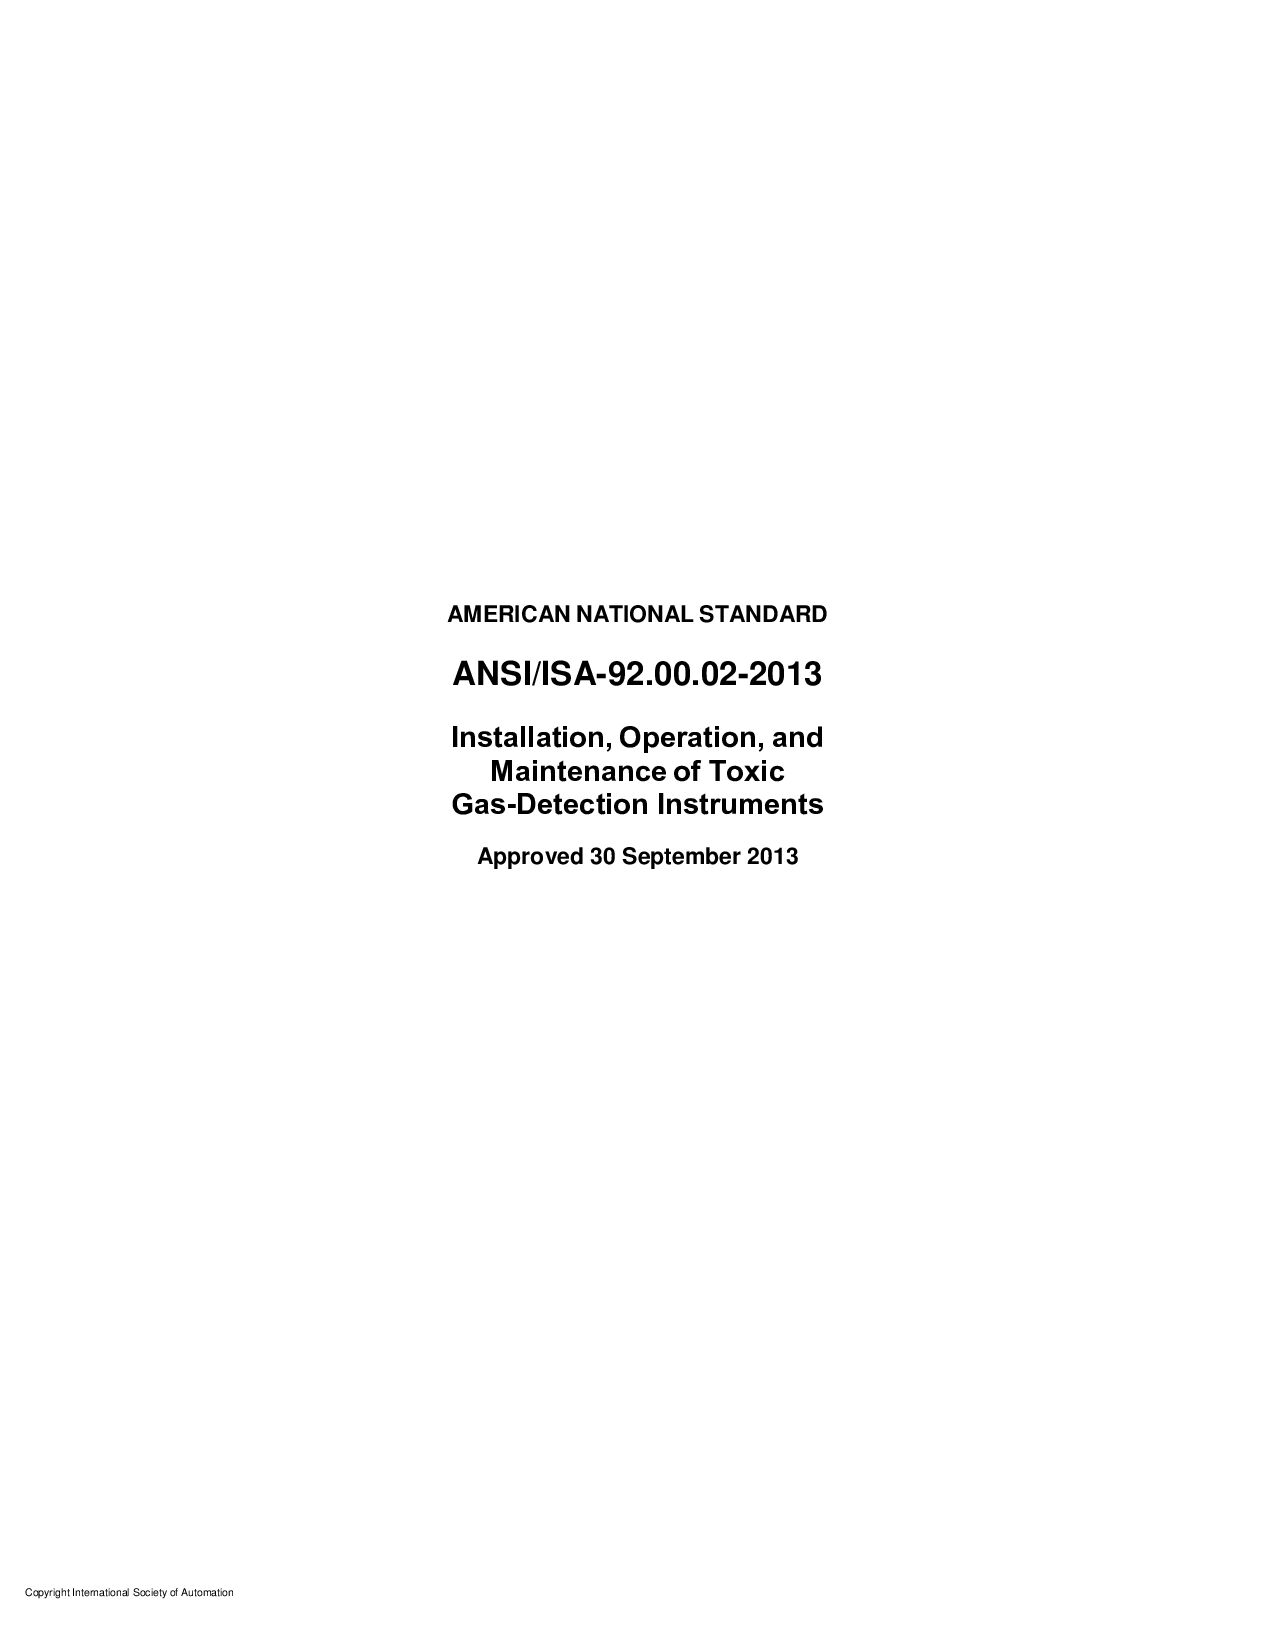 ANSI/ISA 92.00.02-2013封面图